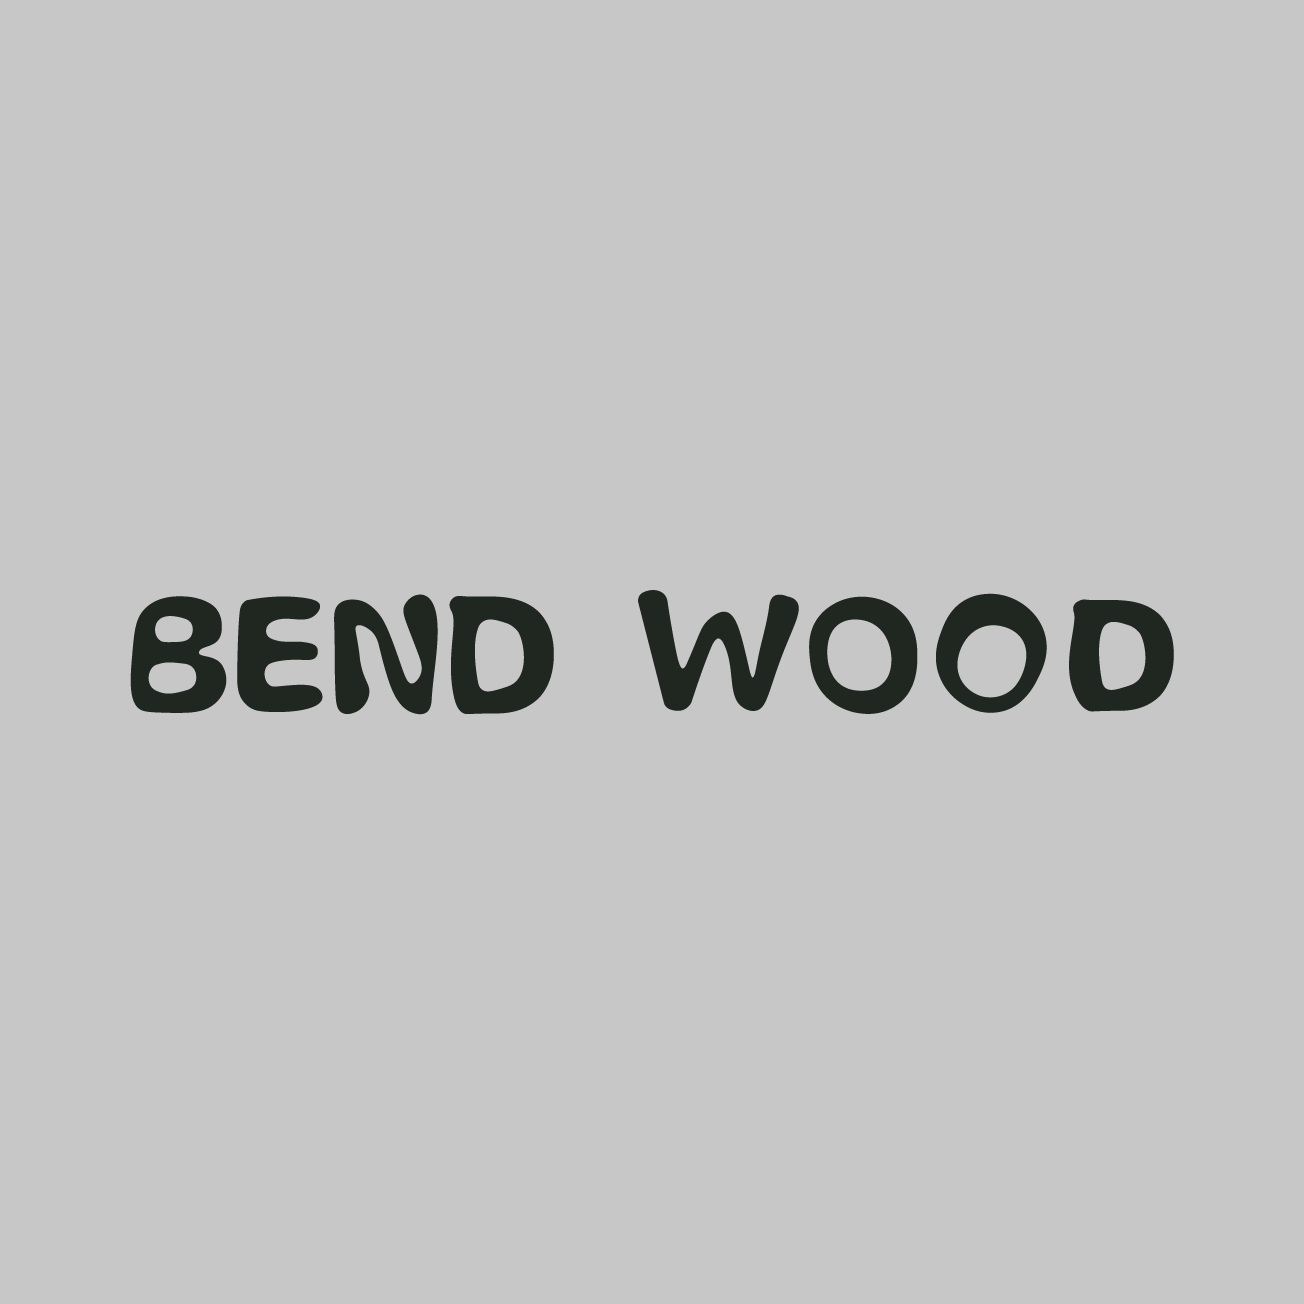 Club Image for BENDWOOD